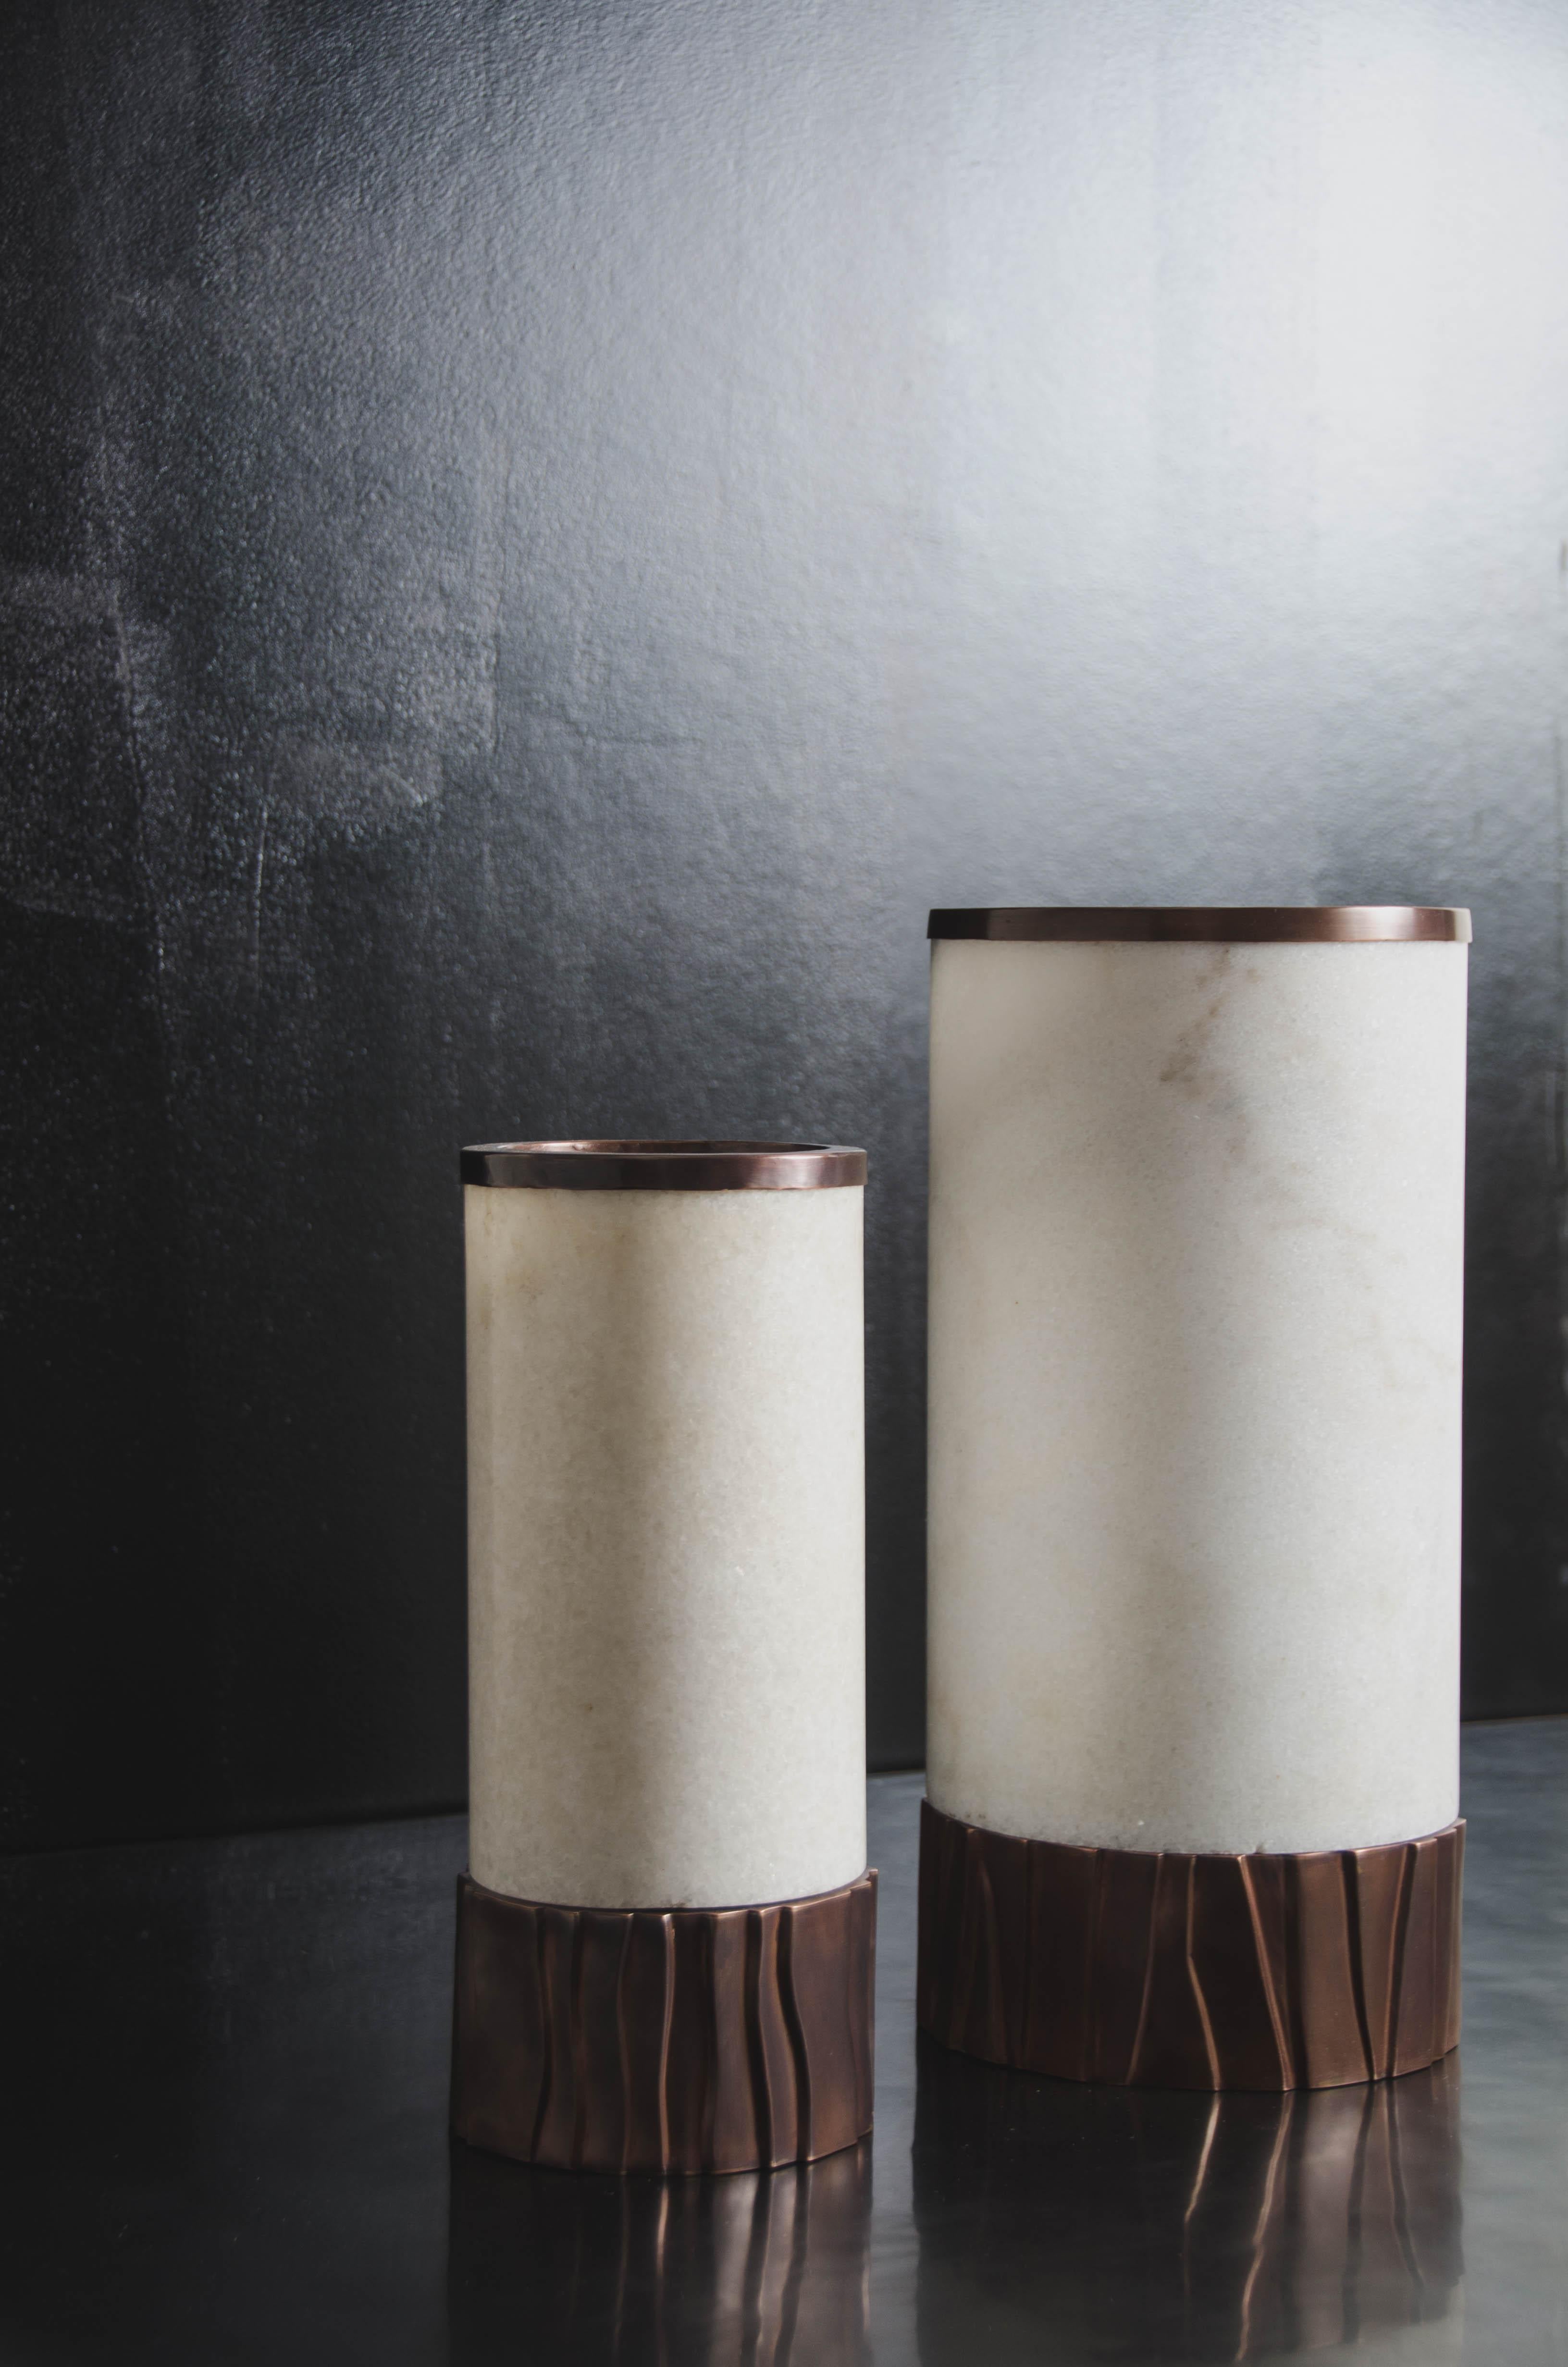 Zylindrische Alabaster-Kupfer-Lampe mit Kuai-Sockel
Alabaster
Kupfer
Hand Repoussé
Limitierte Auflage
Jedes Stück wird individuell angefertigt und ist einzigartig

Repoussé ist die traditionelle Kunst, ein dekoratives Relief von Hand auf ein